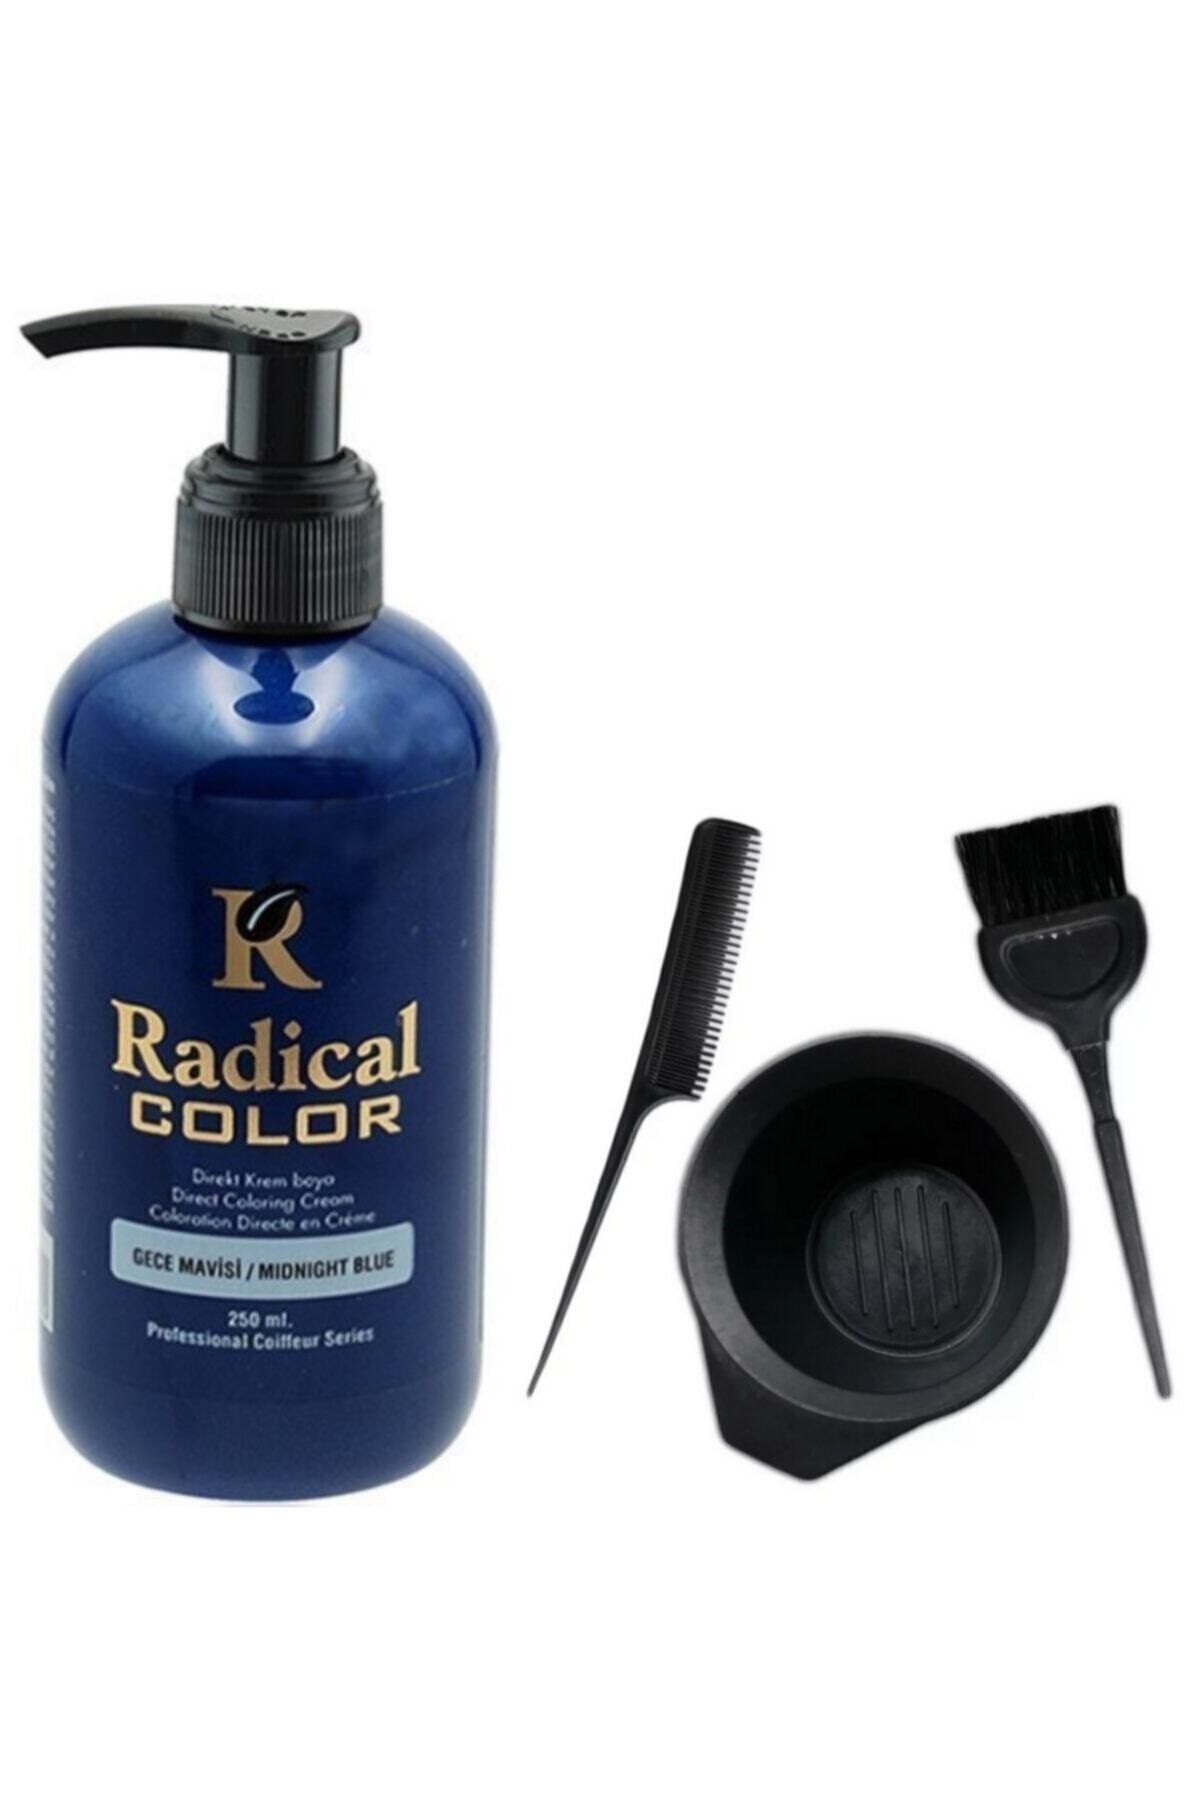 Radical Saç Boyası Gece Mavisi 250ml Ve Fluweel Saç Boya Kabı Seti